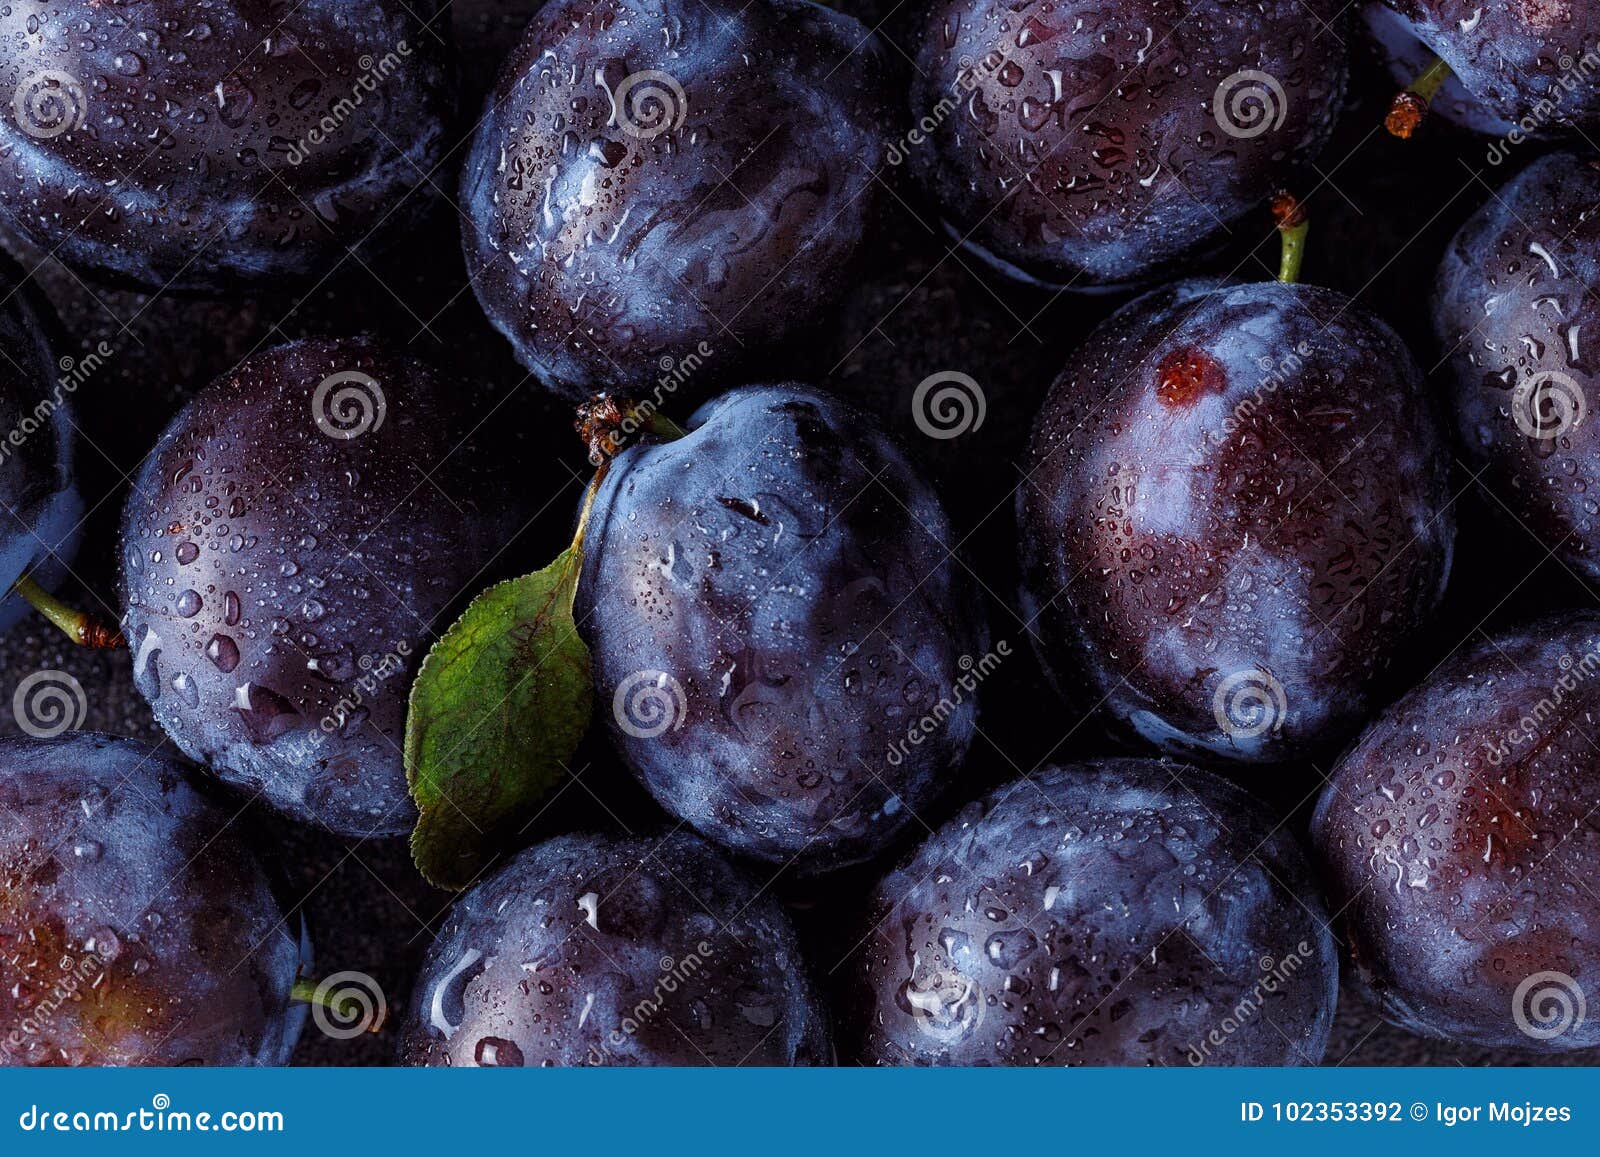 close up of plum on dark